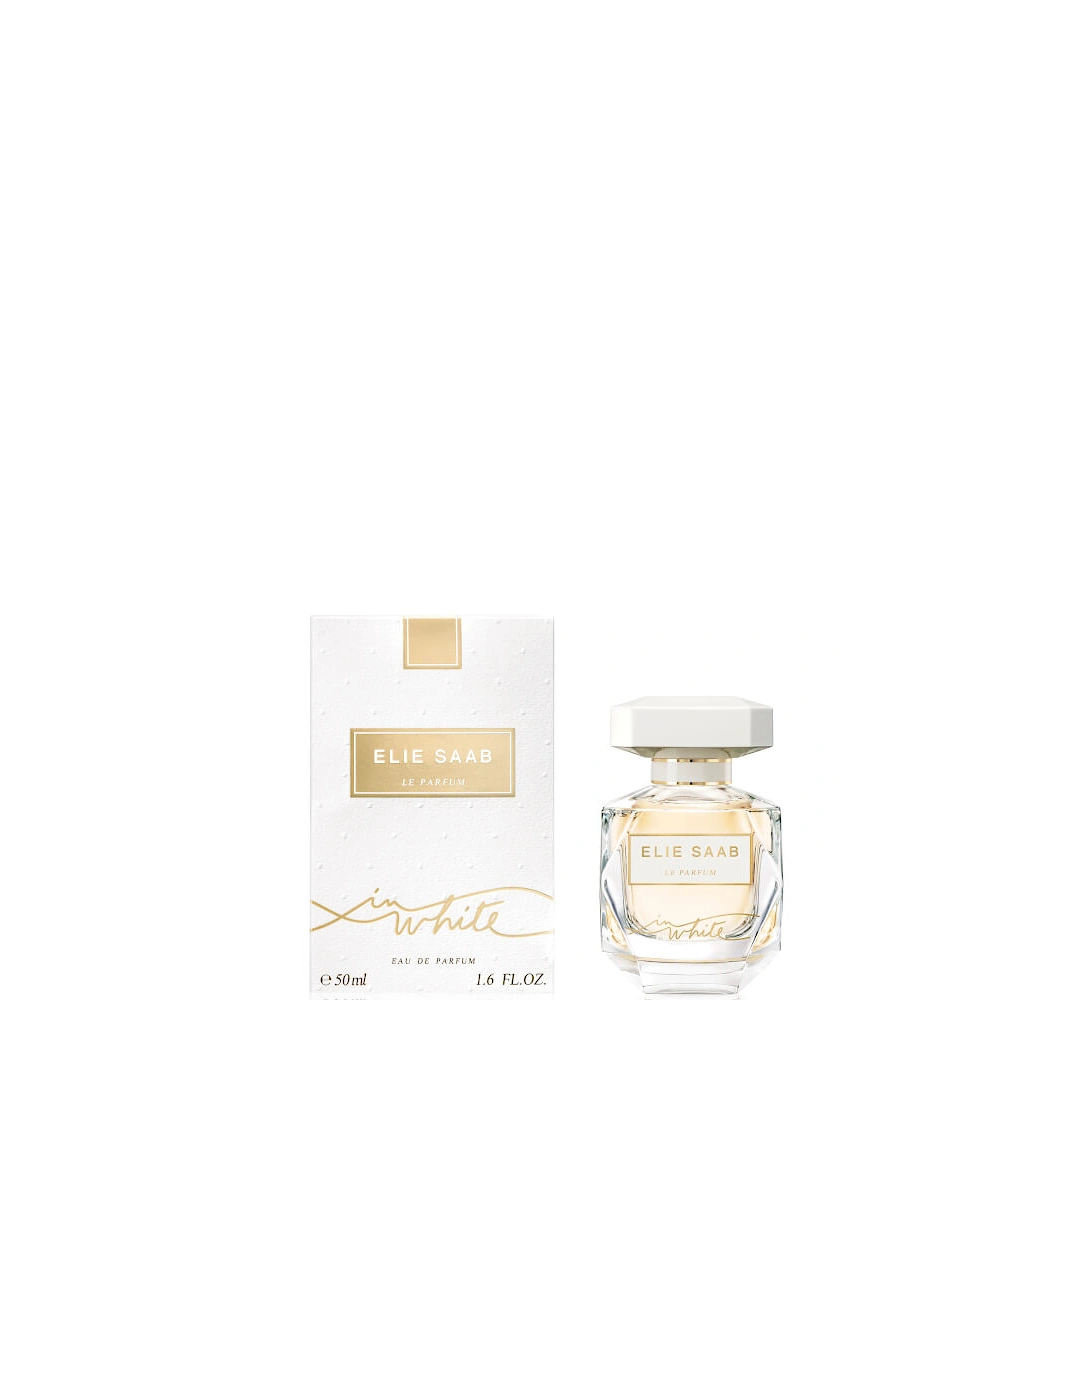 Le Parfum in White Eau de Parfum - 50ml, 2 of 1